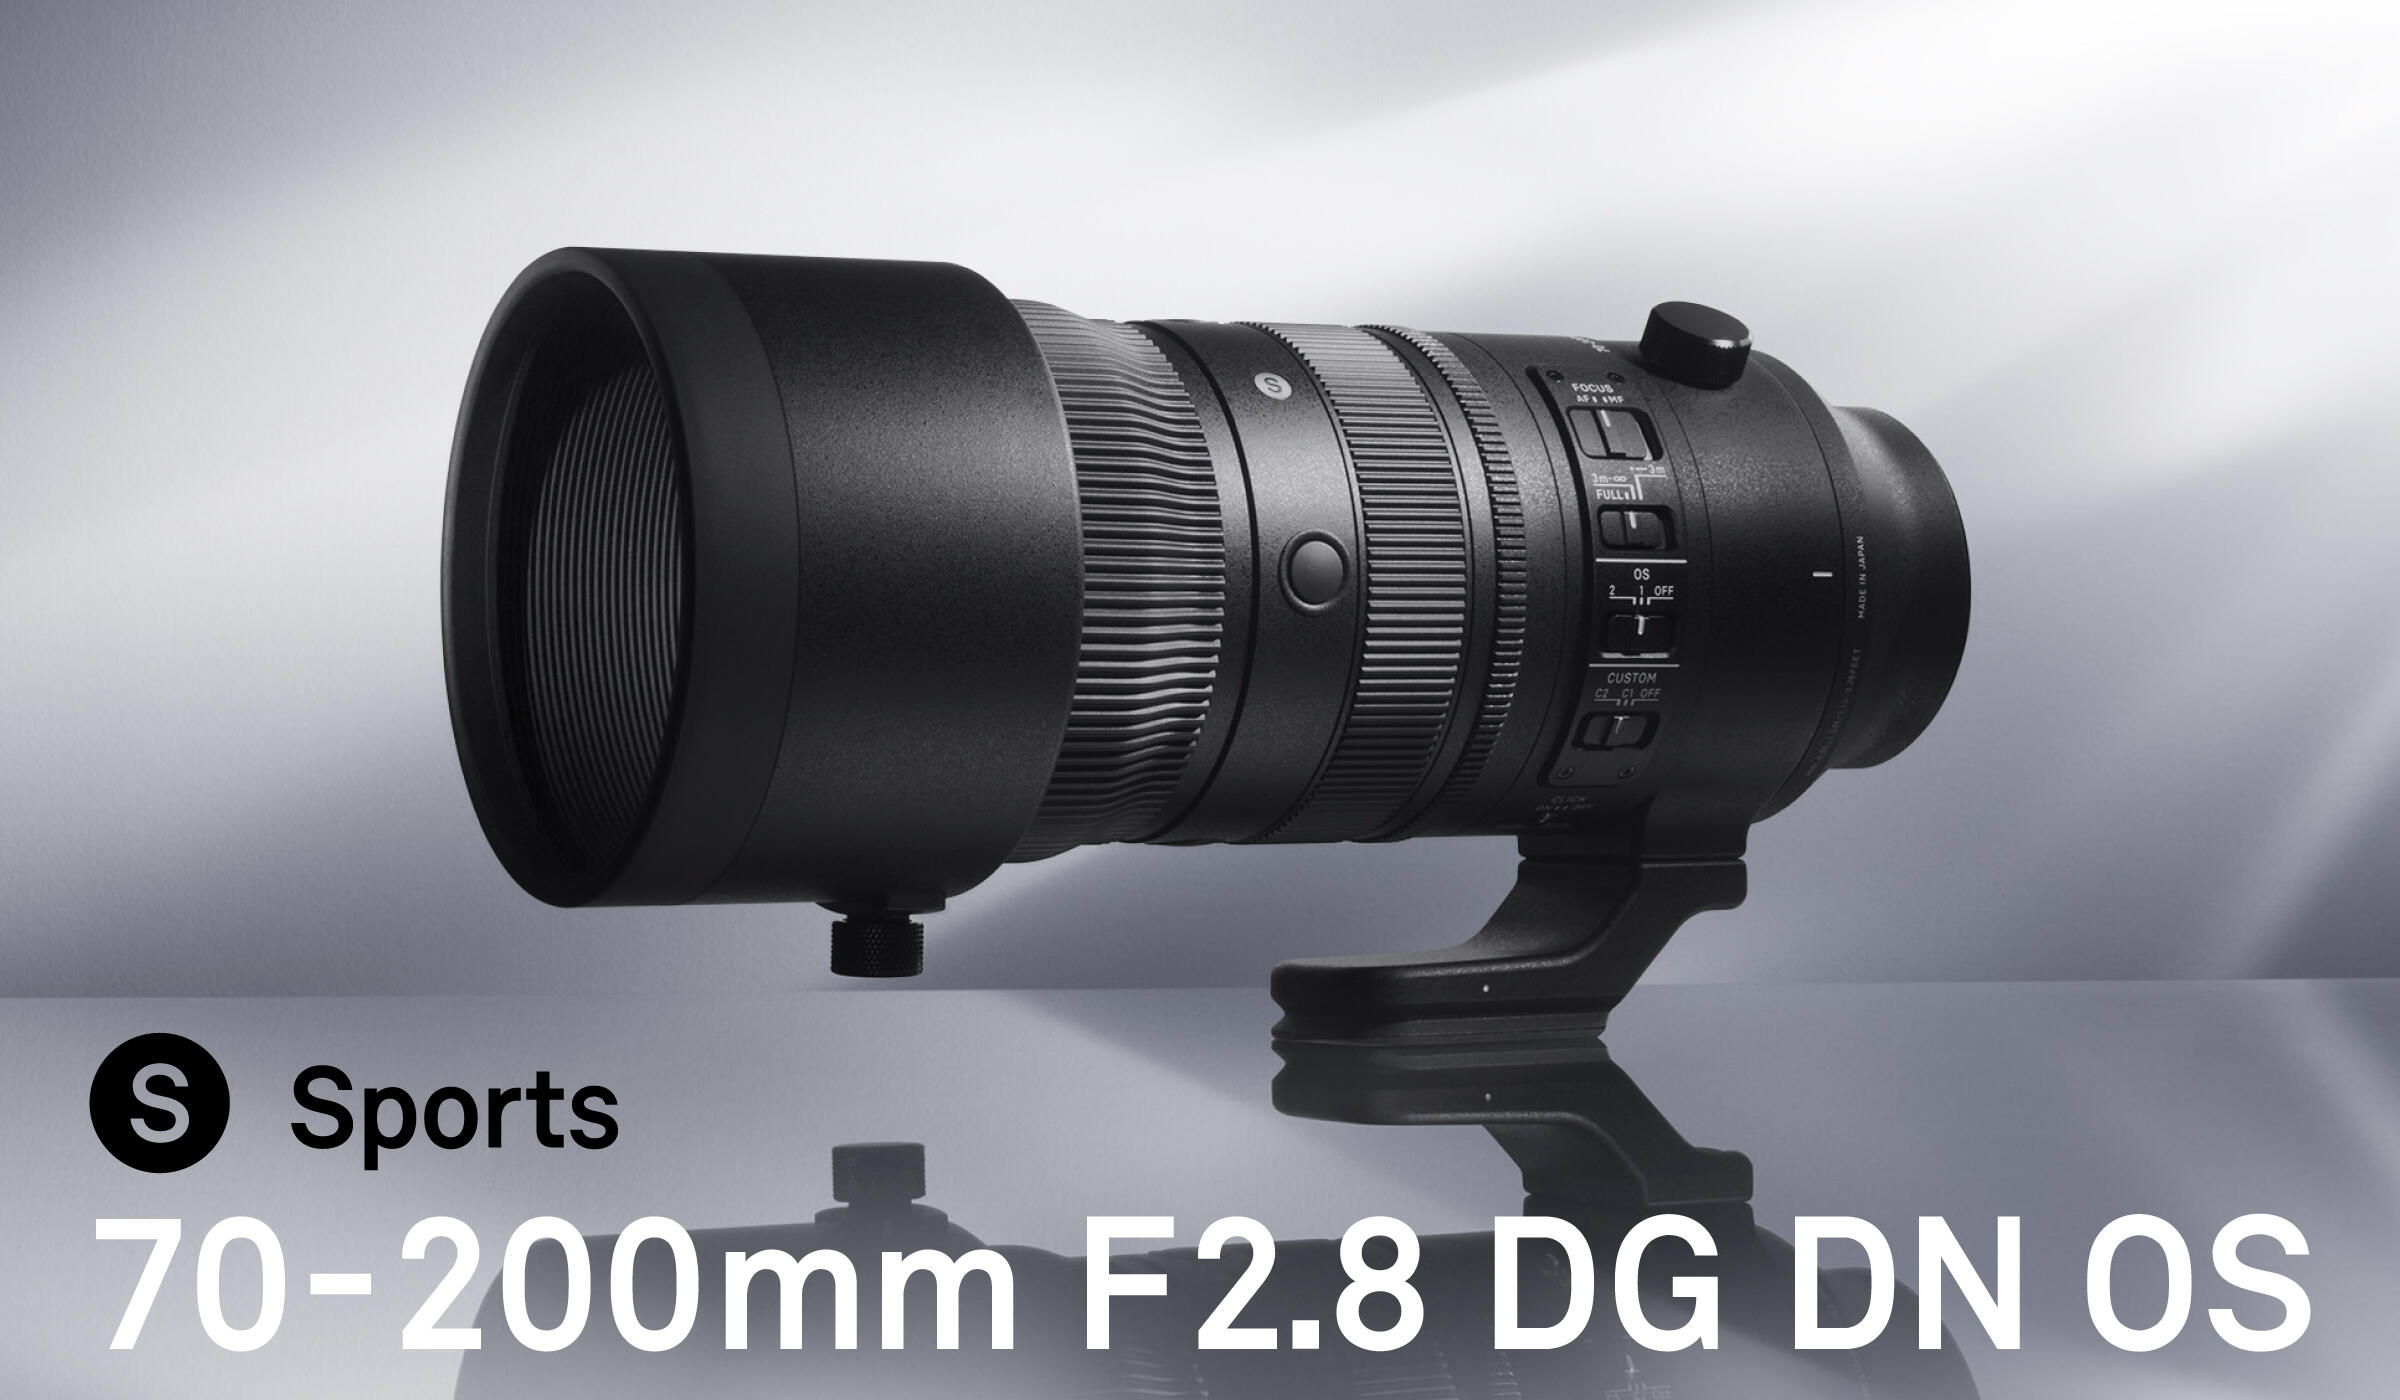 Sigma 70-200mm F2.8 DG DN OS FOR Sony by Amitabh Sharma